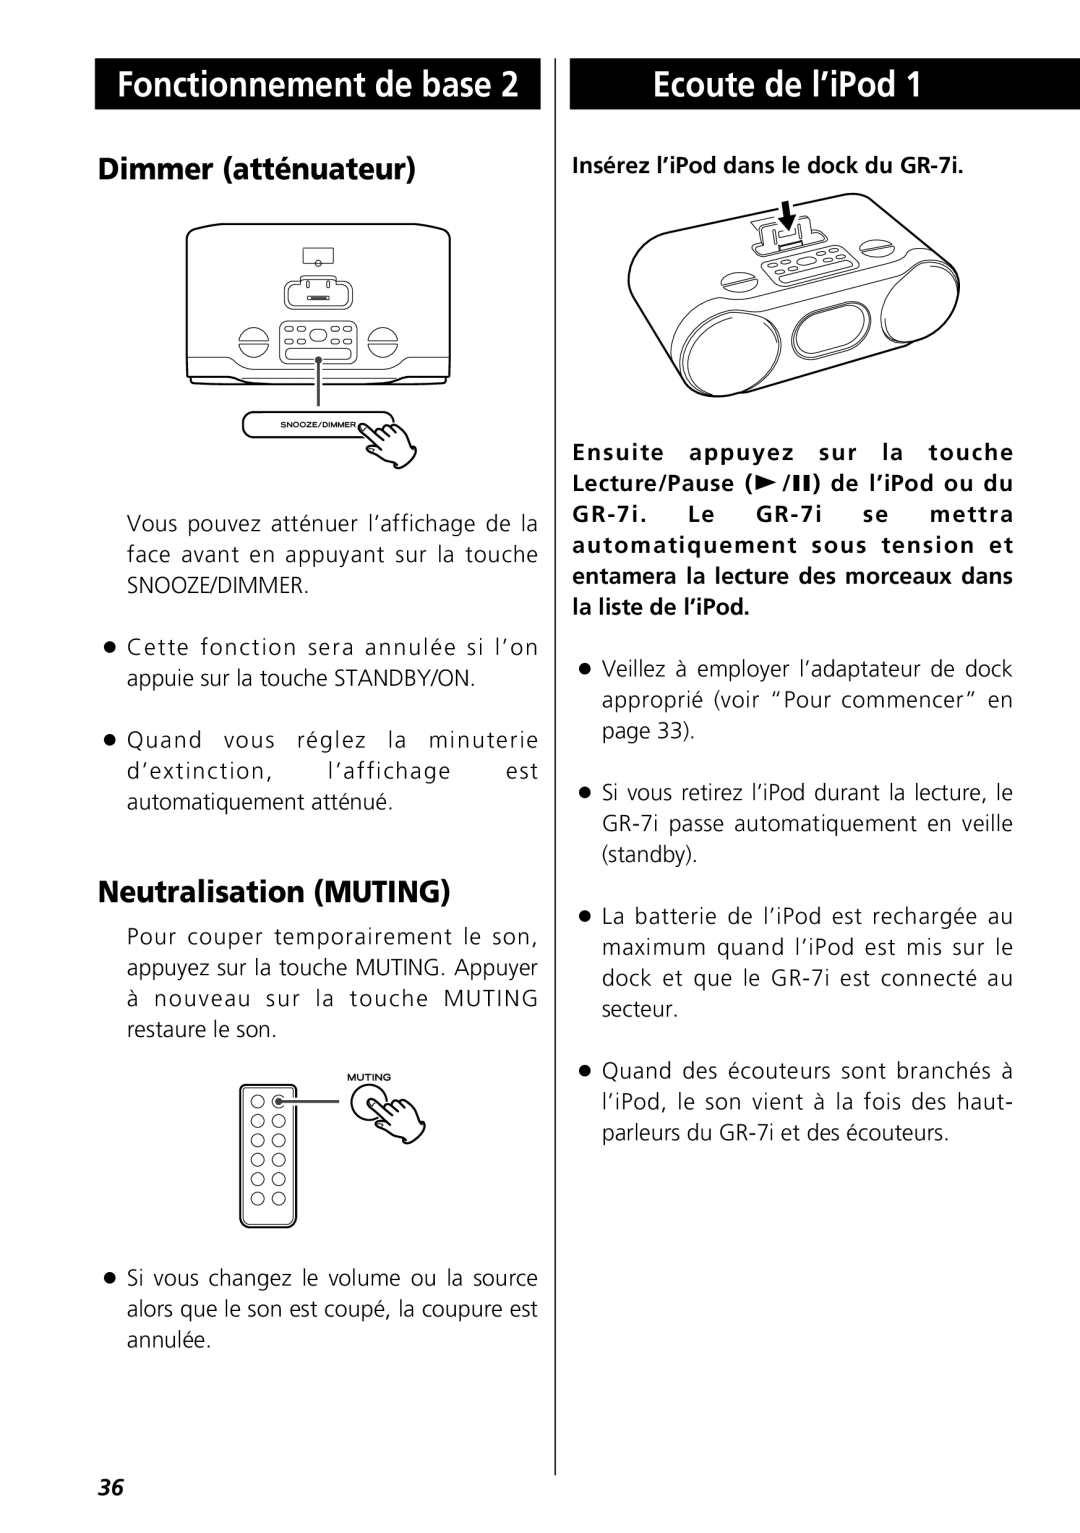 Teac GR-7i owner manual Ecoute de l’iPod, Fonctionnement de base, Dimmer atténuateur, Neutralisation MUTING 